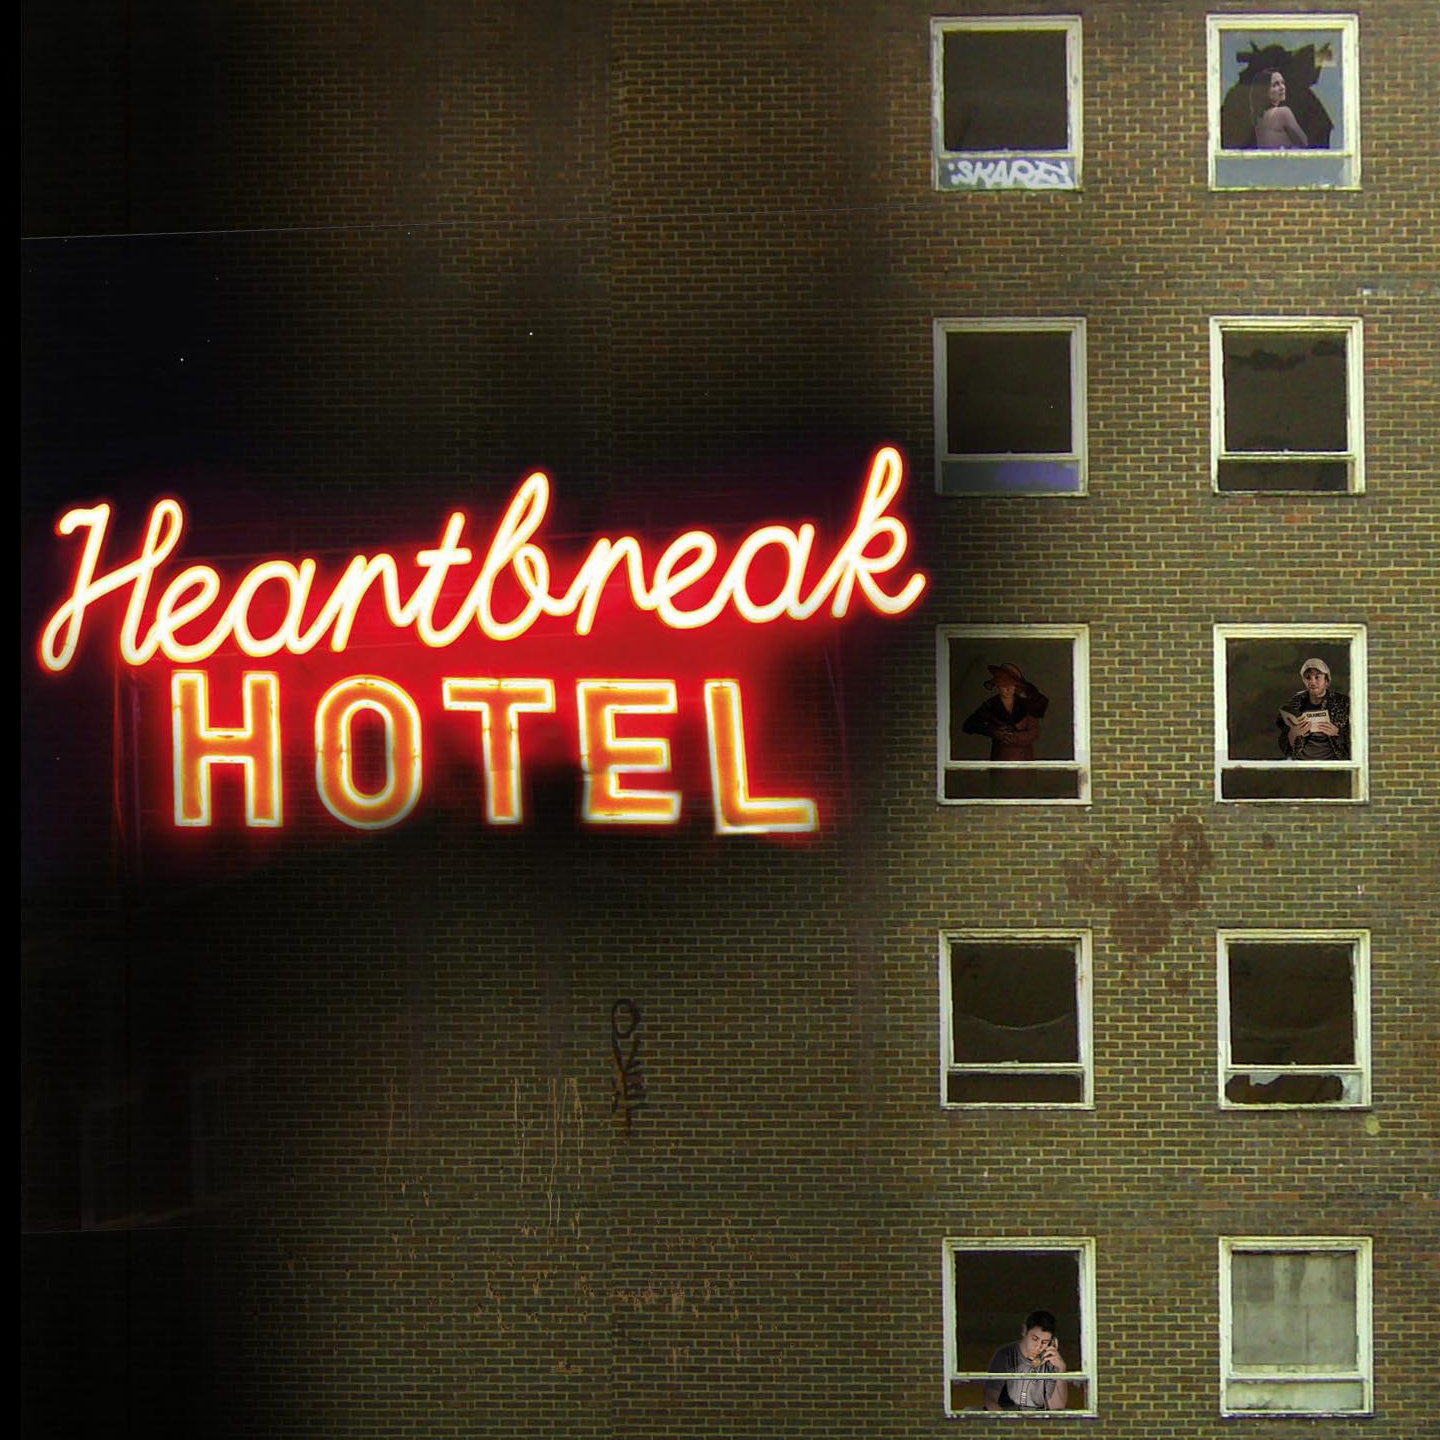 Heartbreak hotel